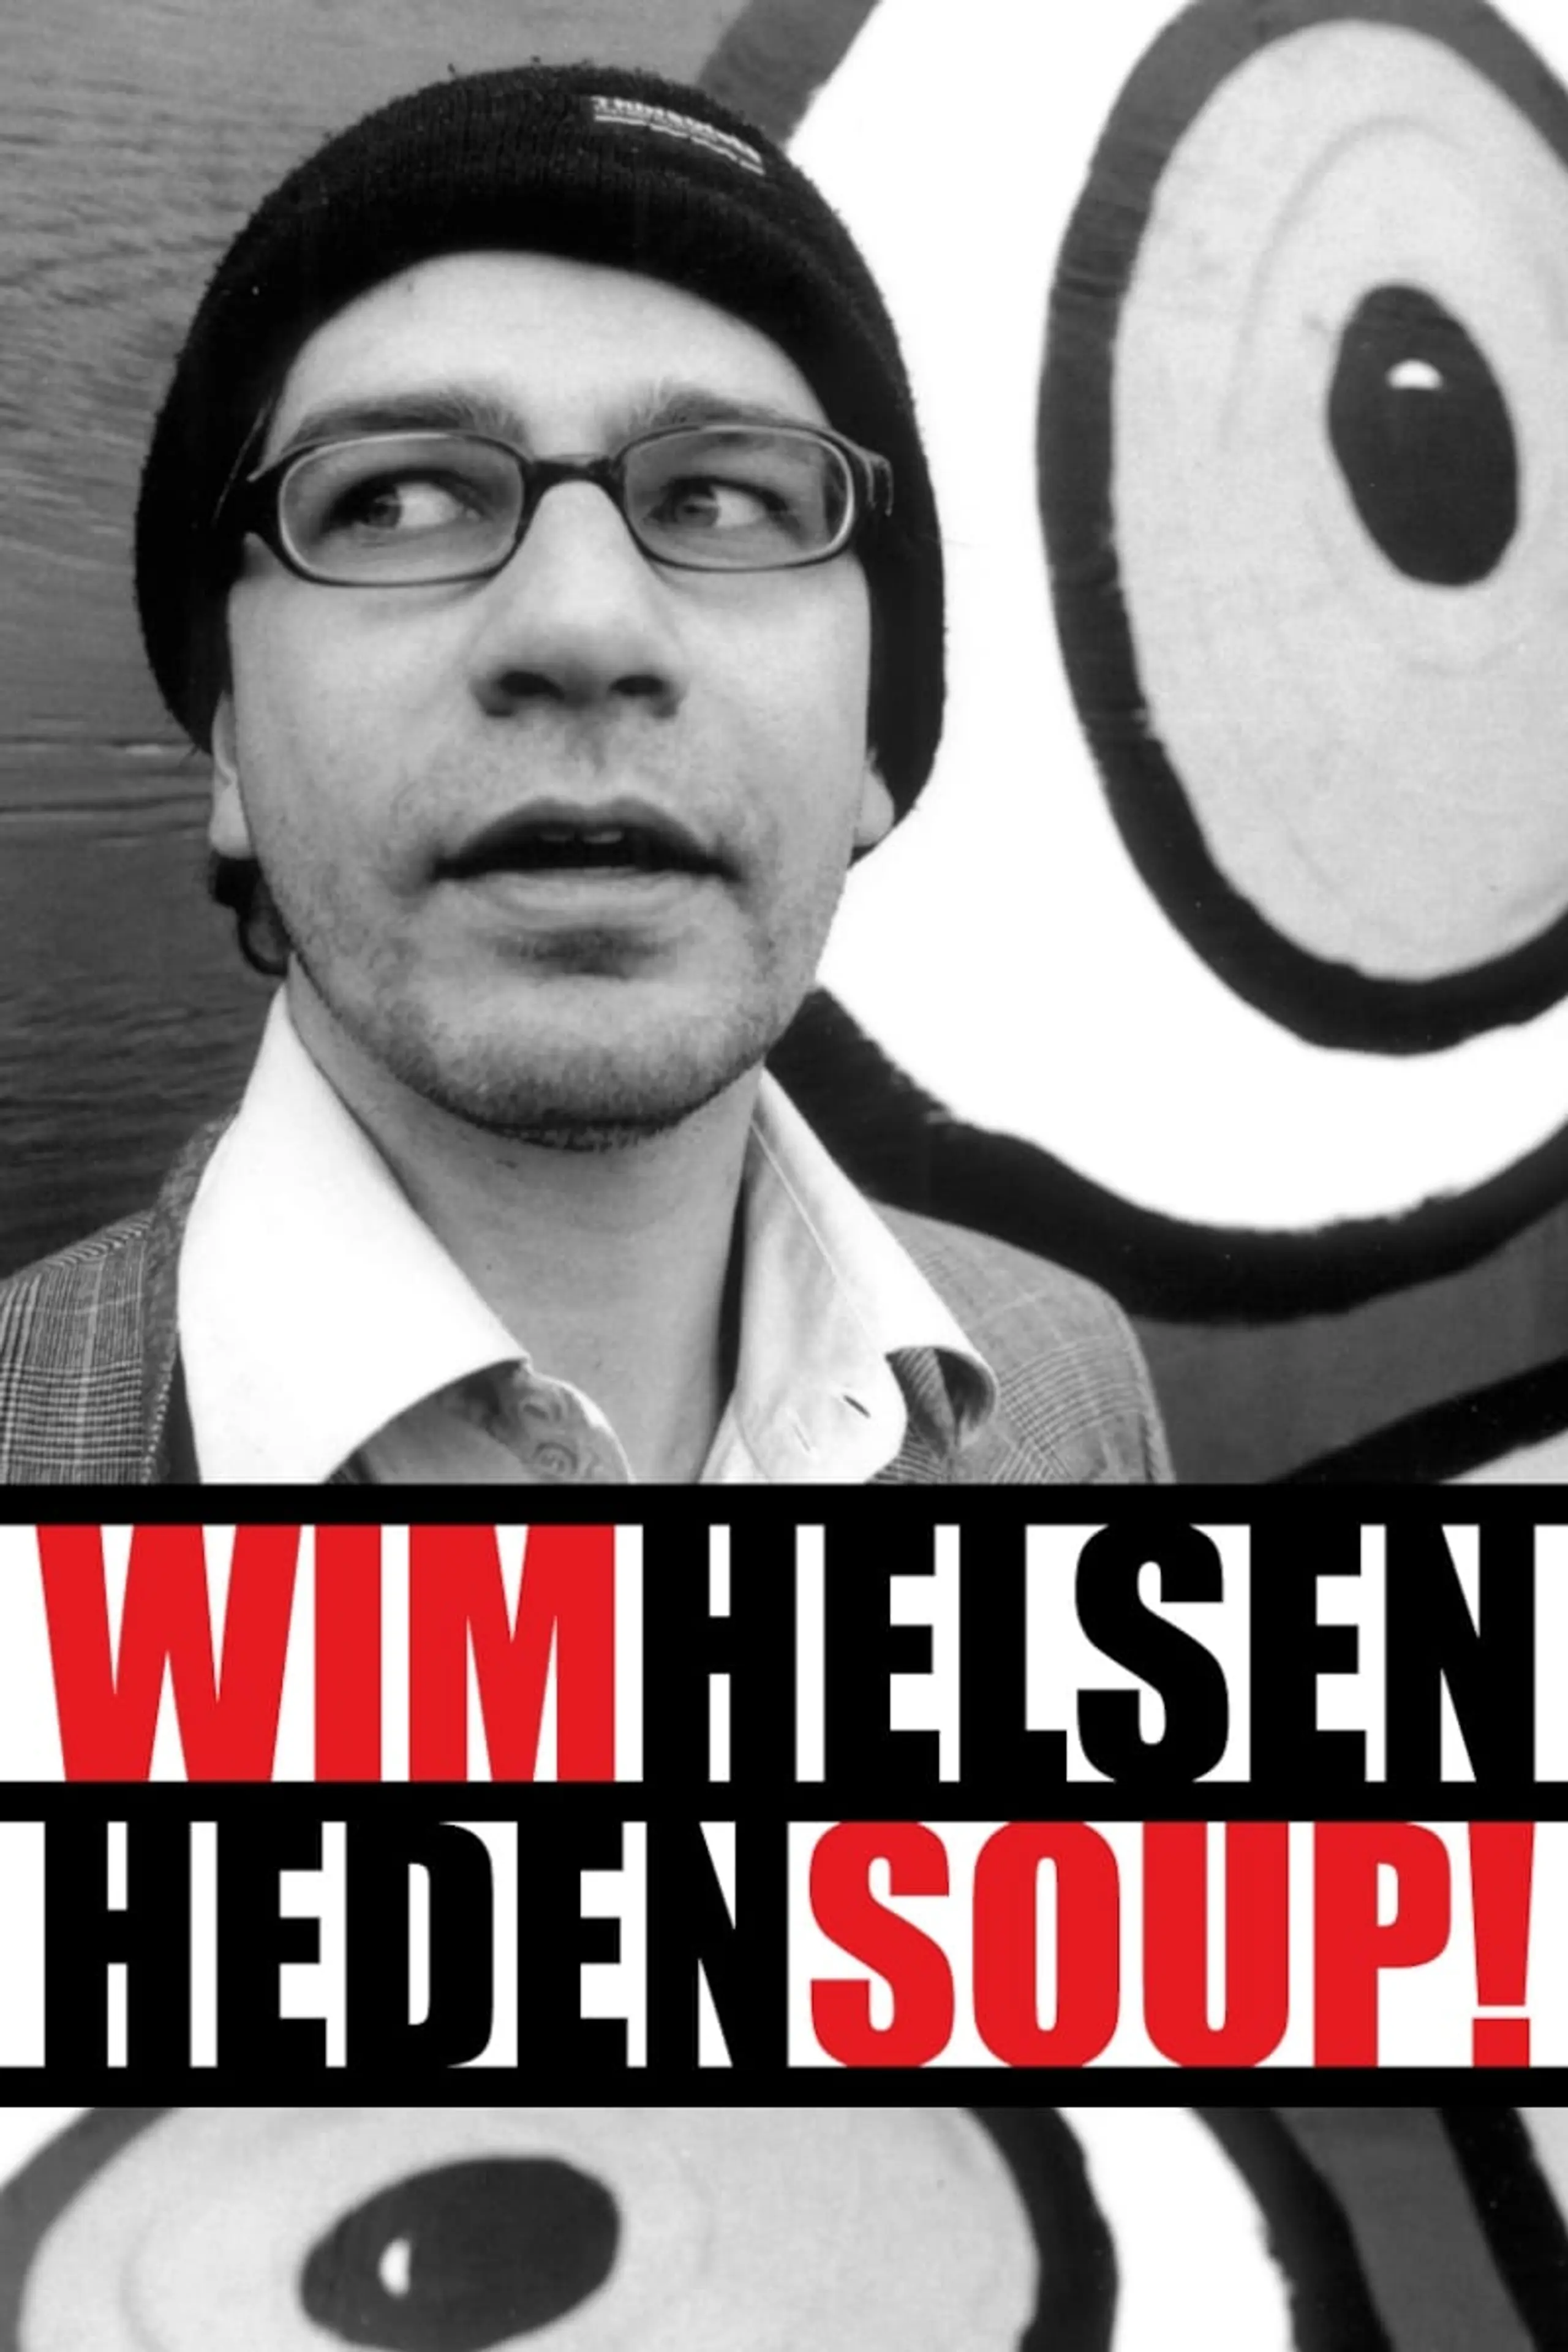 Wim Helsen: Heden Soup!